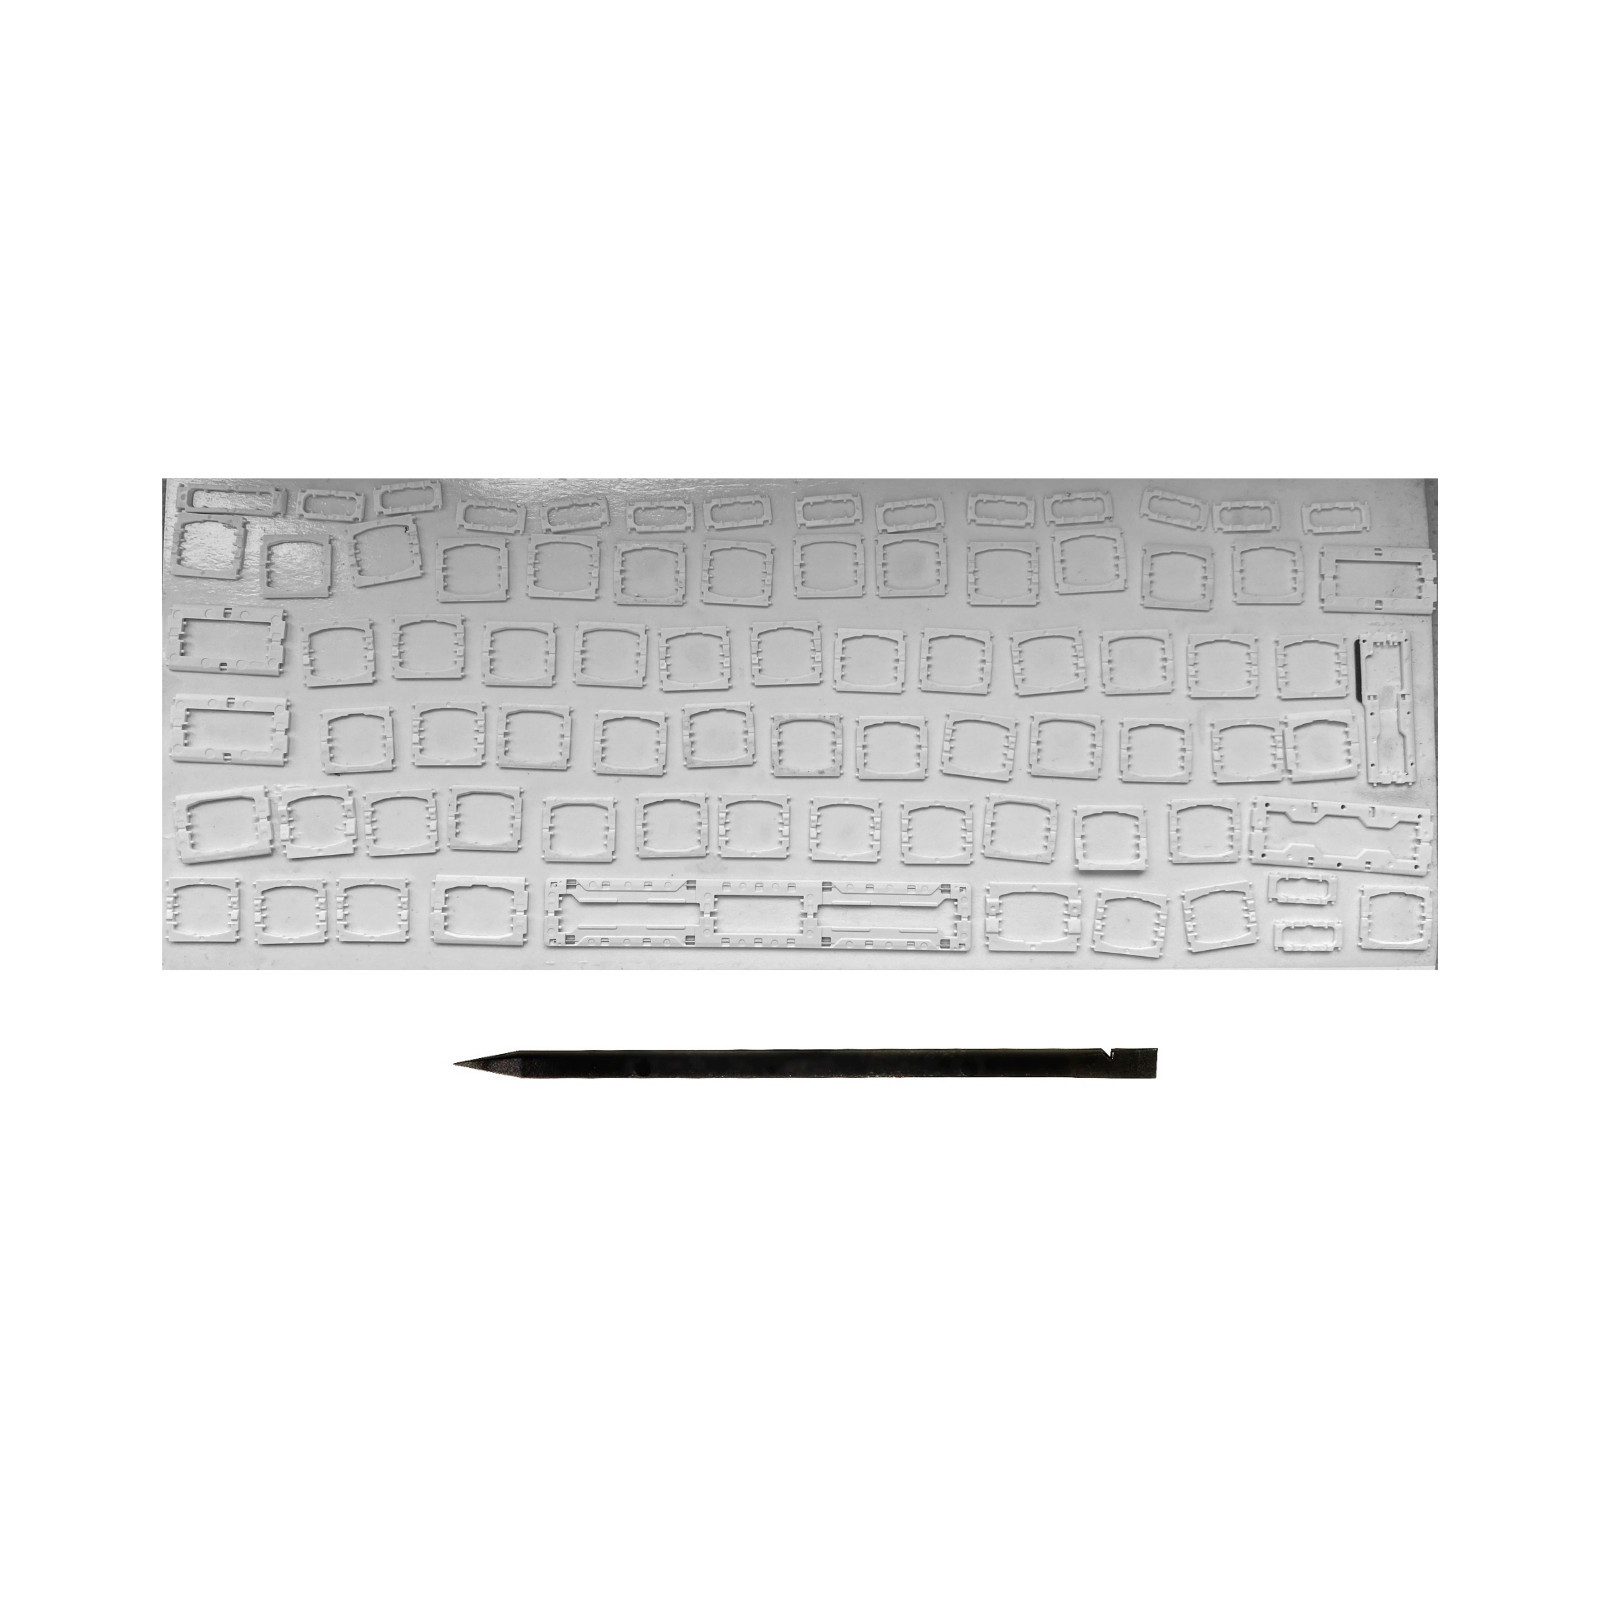 MY LAPTOP SETUP Tastatur-Tastenkappen Scharniere für MacBook Englisches Layout ISO Clip A1708